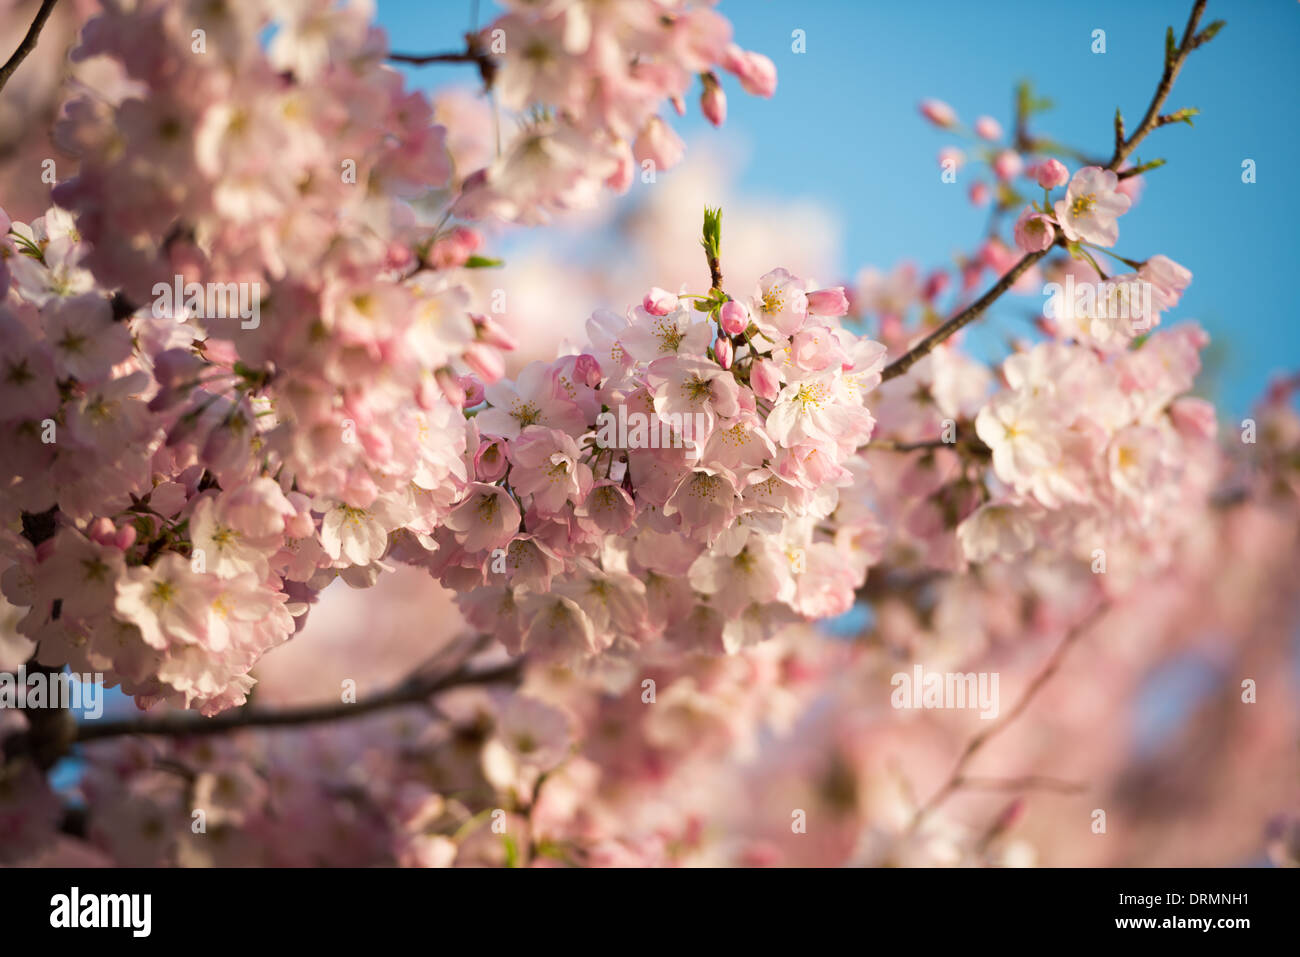 WASHINGTON DC, USA - La floraison de près de 1 700 cerisiers en fleurs autour du bassin, dont certains sont vieux de plus d'un siècle, est un événement annuel à Washington's spring et réunit des centaines de milliers de touristes à la ville. Banque D'Images